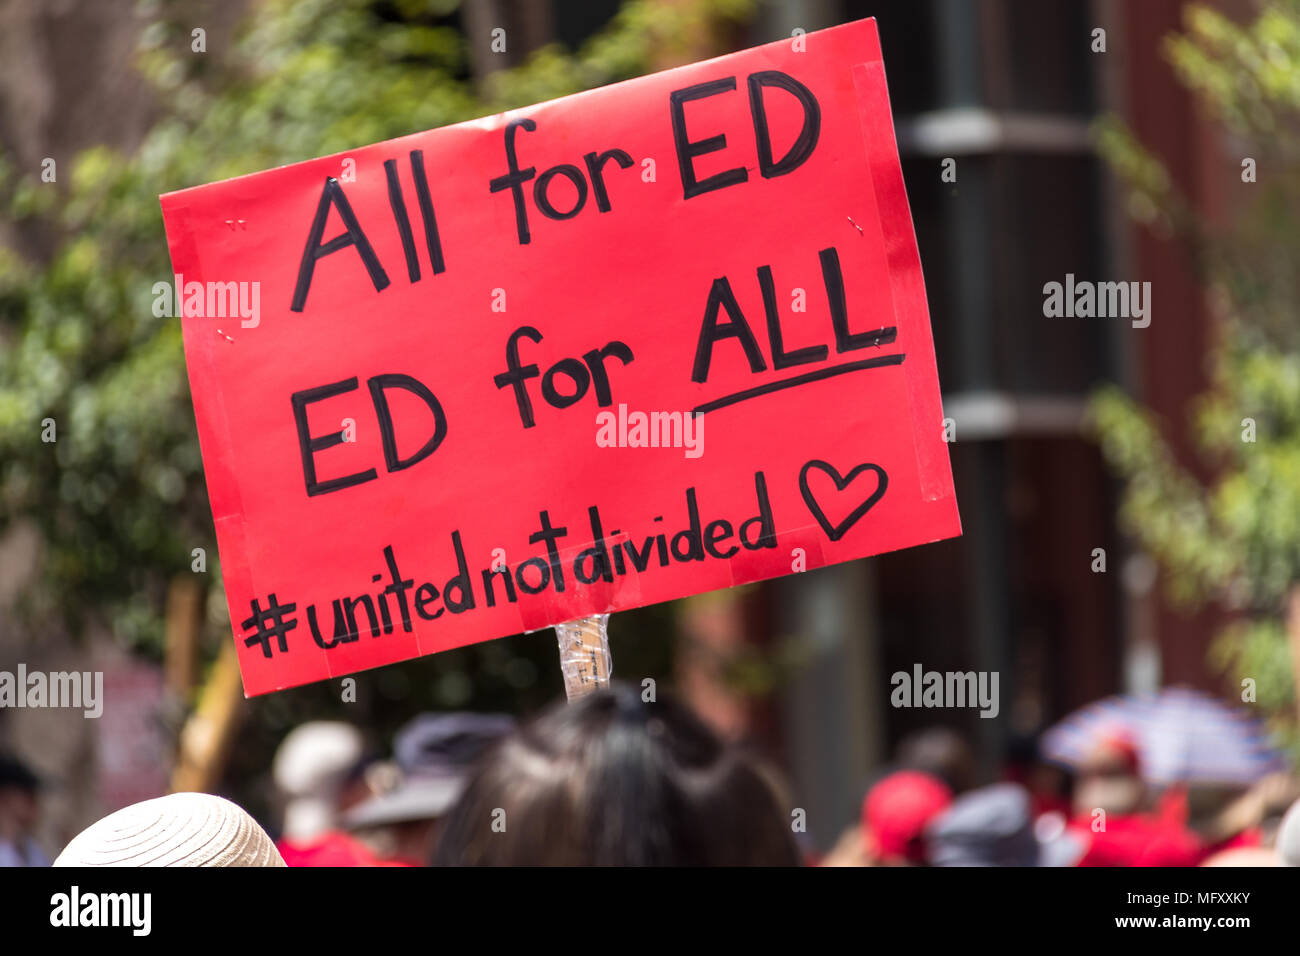 Phoenix, USA, 26 avril 2018, le n° RedForEd - Mars Tous pour ED, ED pour tous ; United n'est pas divisée. Credit : Michelle Jones - Arizona/Alamy Live News. Banque D'Images